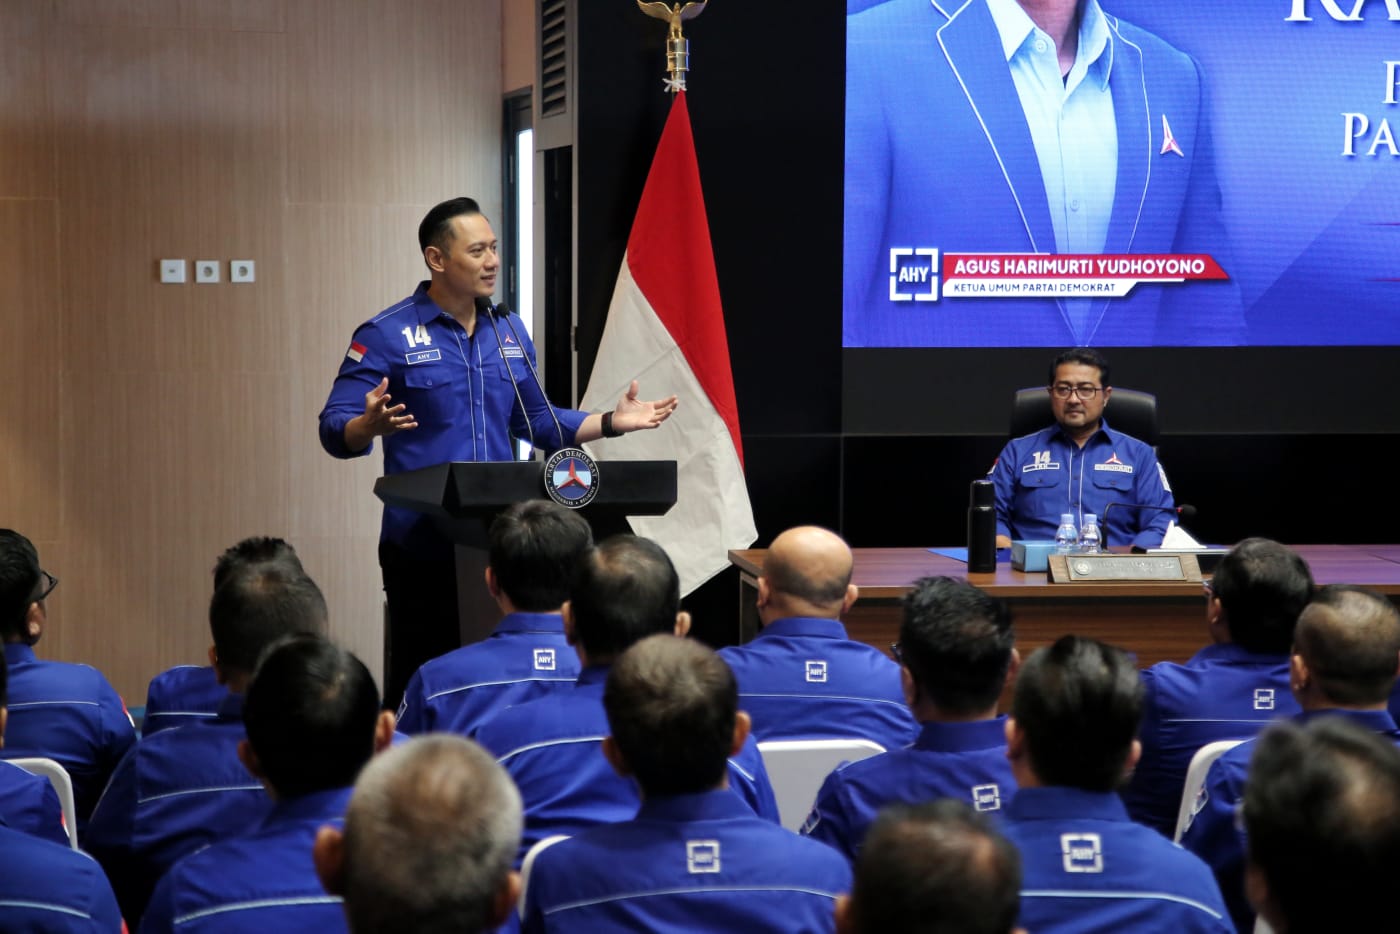 Ketua Umum Partai Demokrat Agus Harimurti Yudhoyono (AHY) memimpin Rapat Pleno Pengurus DPP Partai Demokrat di Aula Yudhoyono DPP Partai Demokrat, Jumat (13/10) siang.